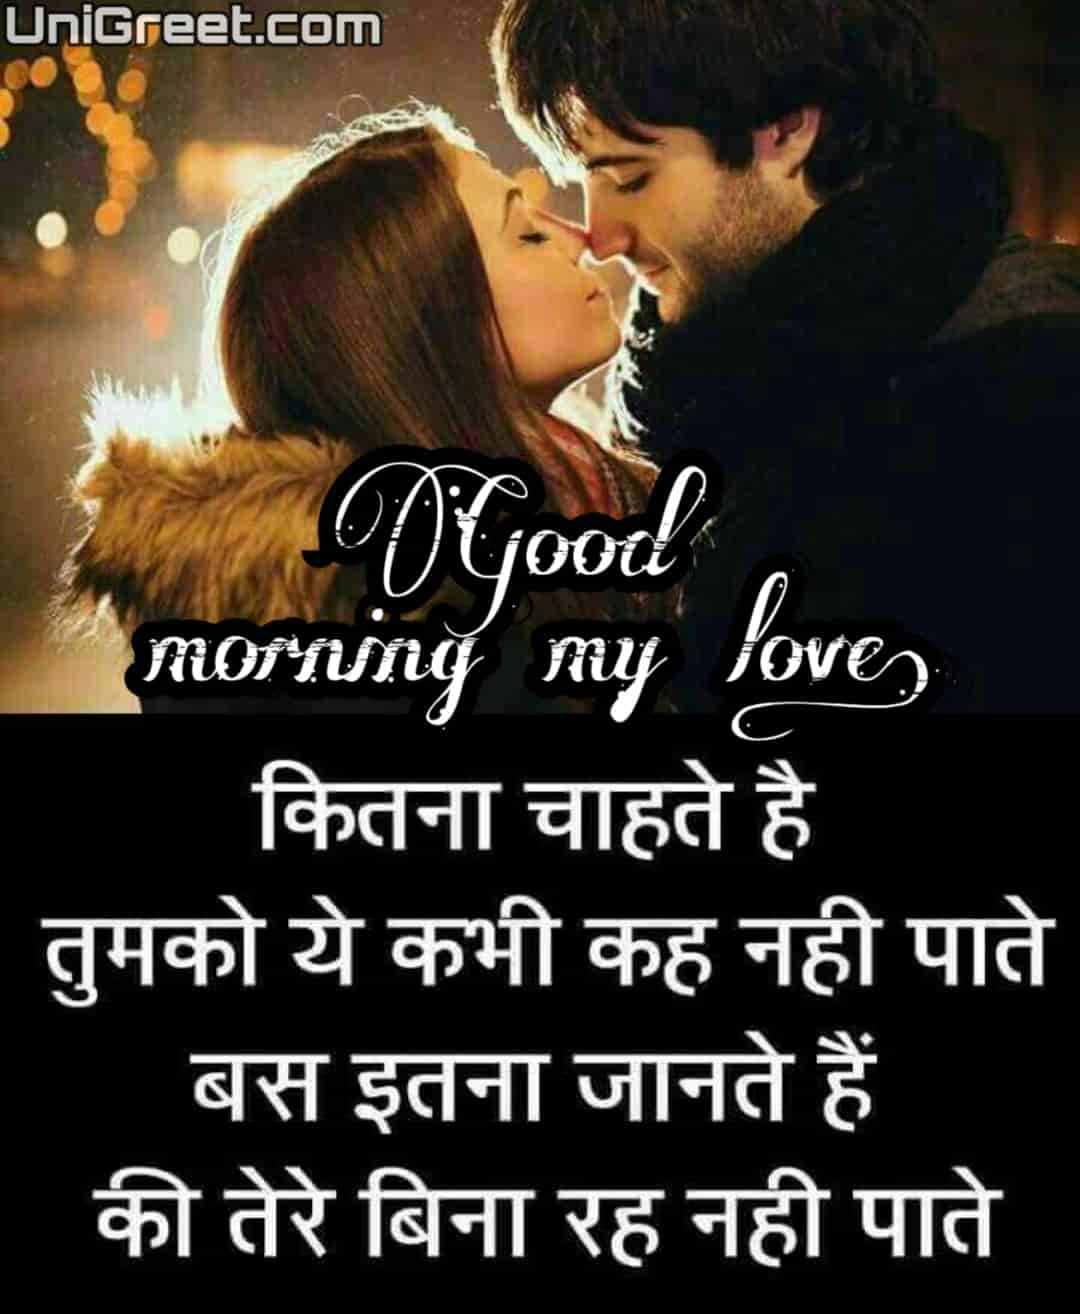 Romantic Good Morning Shayari For Wife In Hindi